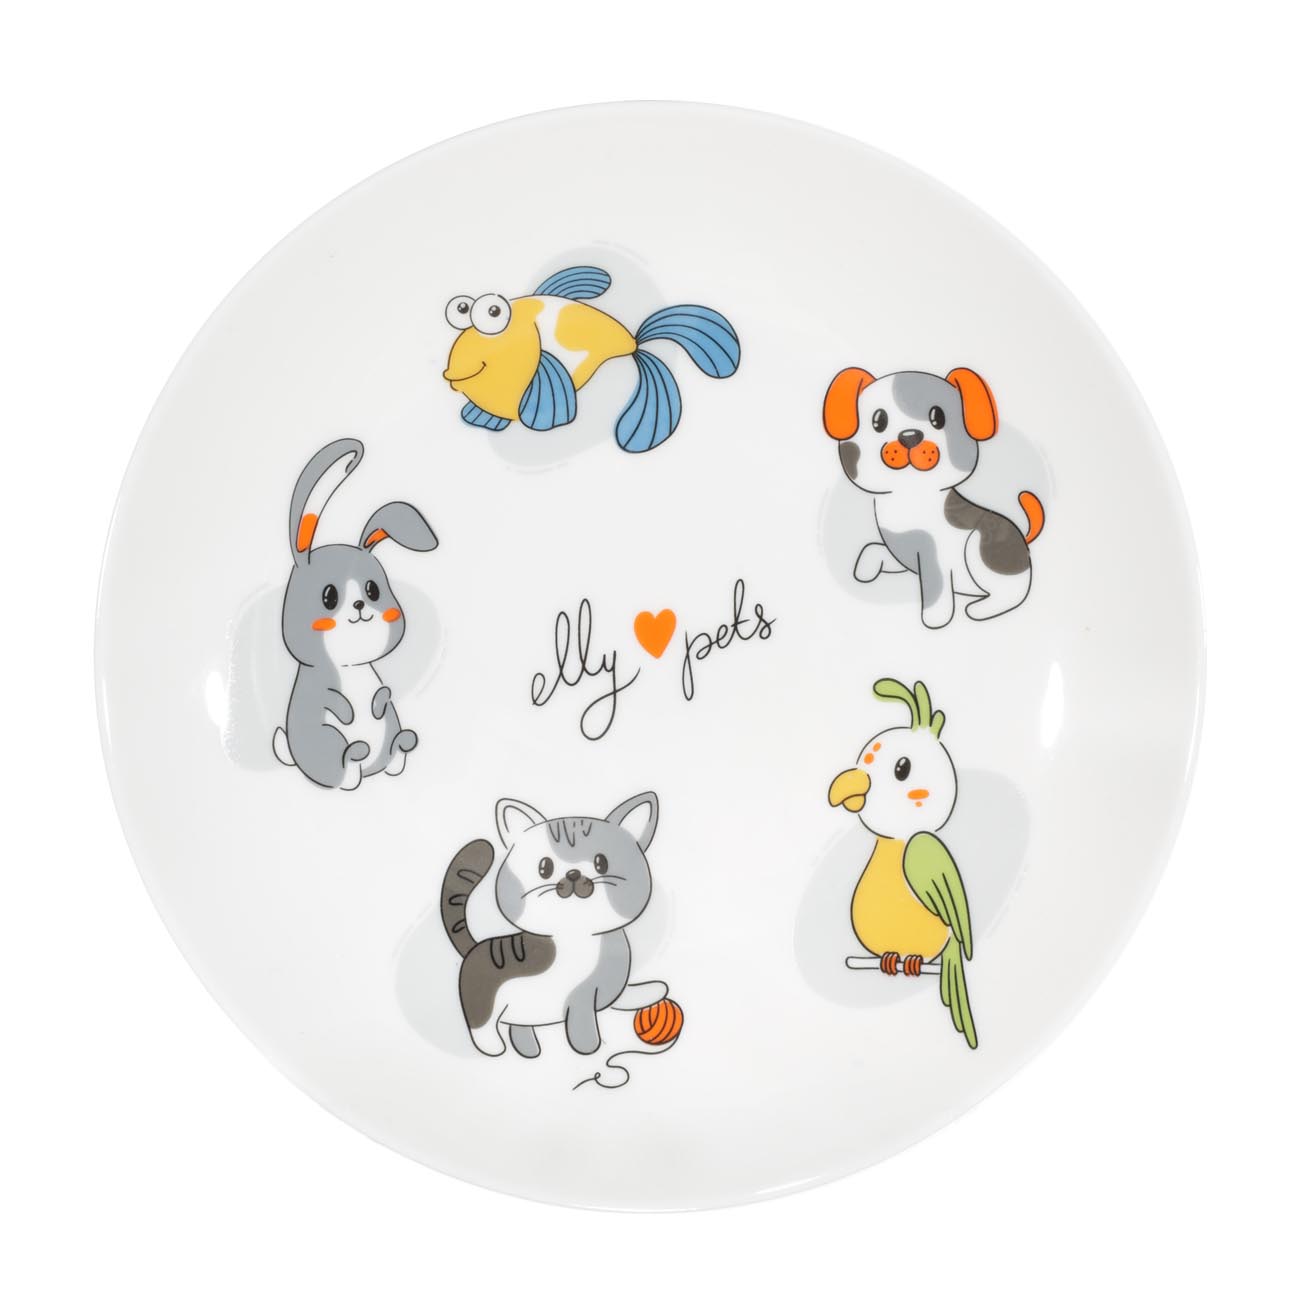 Набор посуды, детский, 3 пр, фарфор N, белый, My pets, Little pet изображение № 2